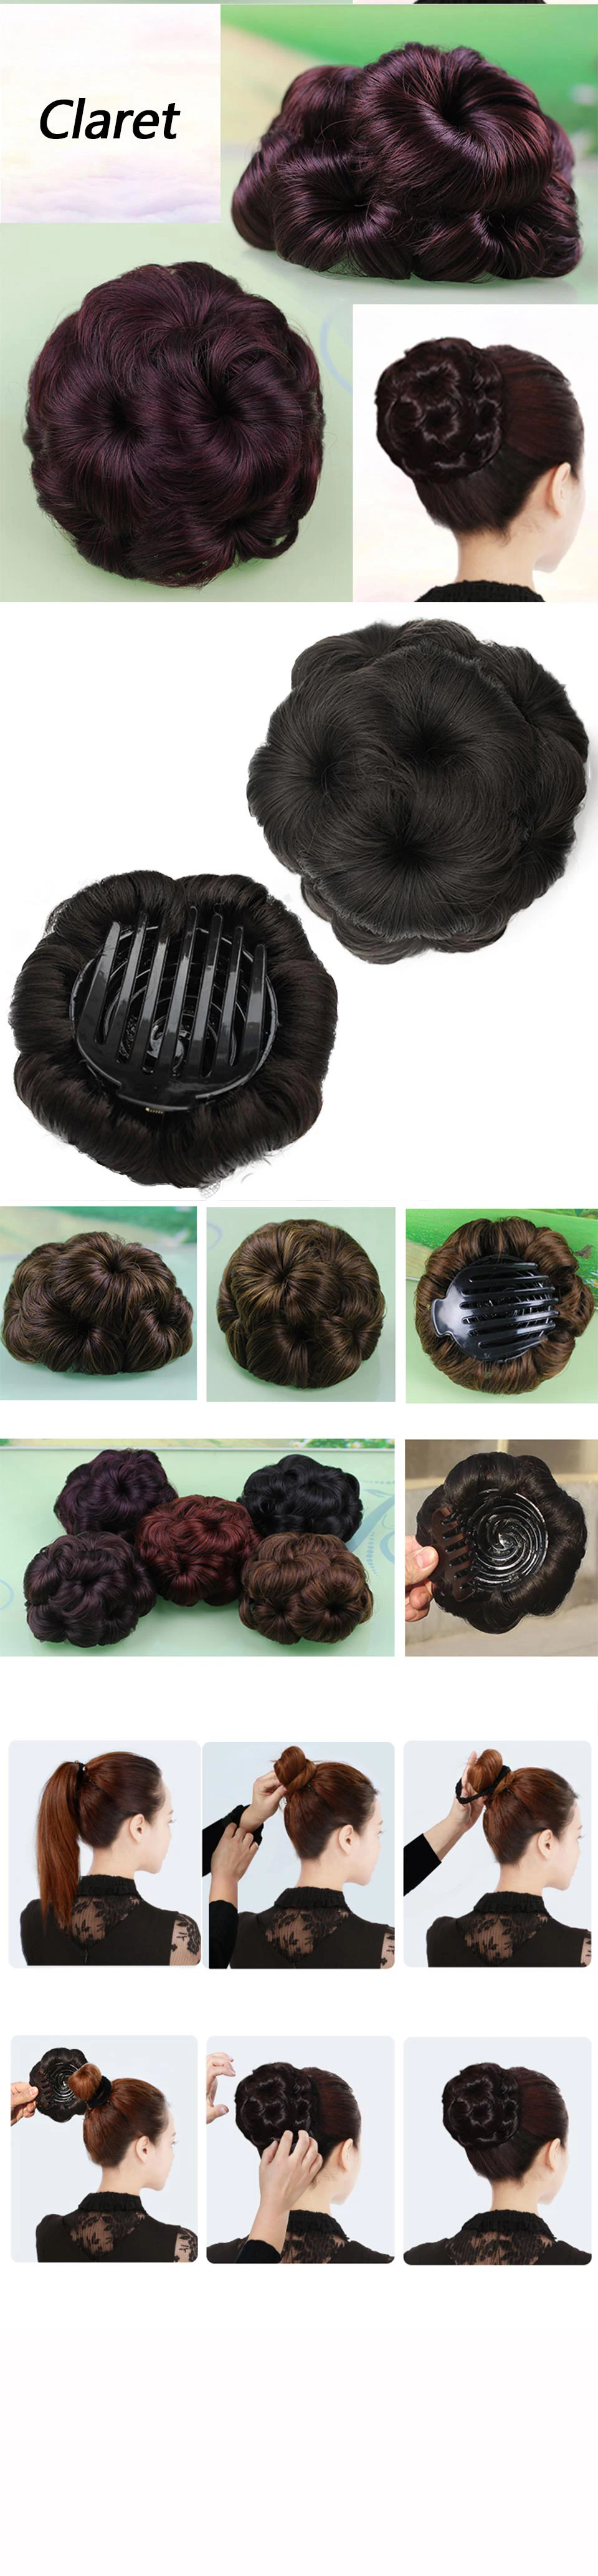 JINKAILI аксессуары на конский хвост волос кусок синтетического волокна клип в эластичном поддельные 9 волос Цветы коготь кудрявый шиньон невесты волос булочка